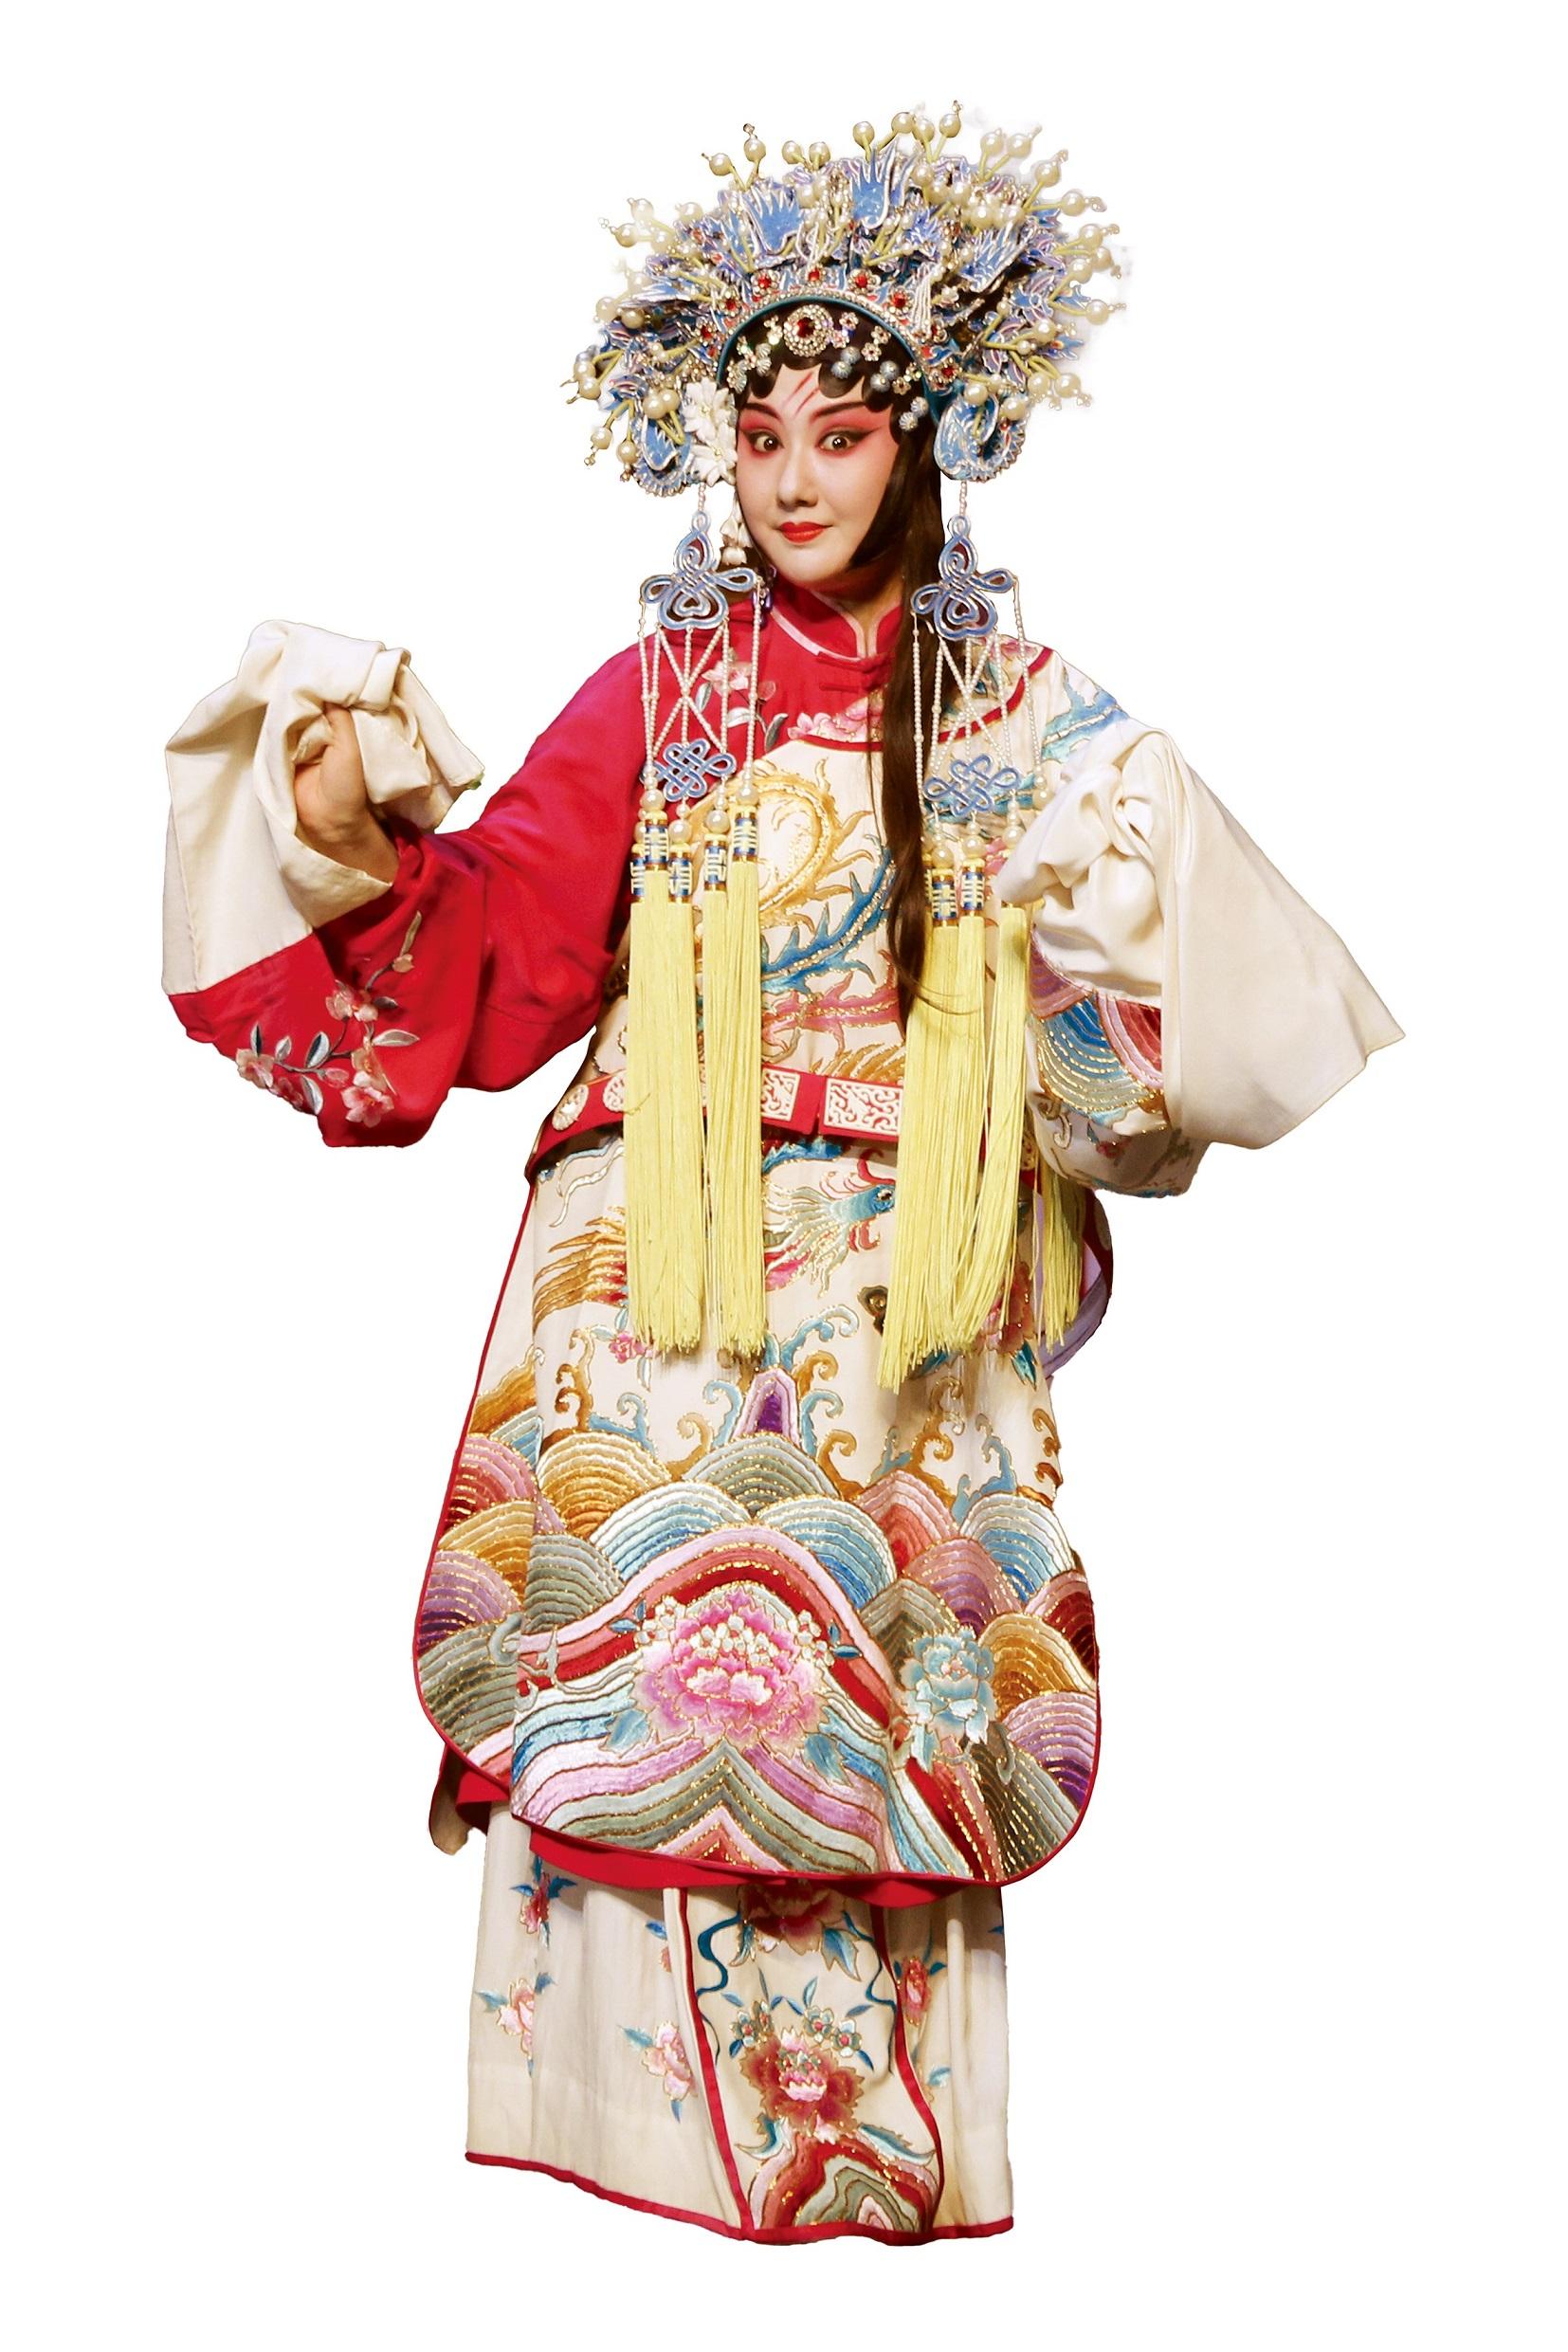 由康樂及文化事務署主辦的中國戲曲節（戲曲節）今年於六月至十月期間帶來高水平戲曲節目。圖為中國戲劇梅花奬得主王荔，她將隨武漢漢劇院劇組赴港於戲曲節演出。